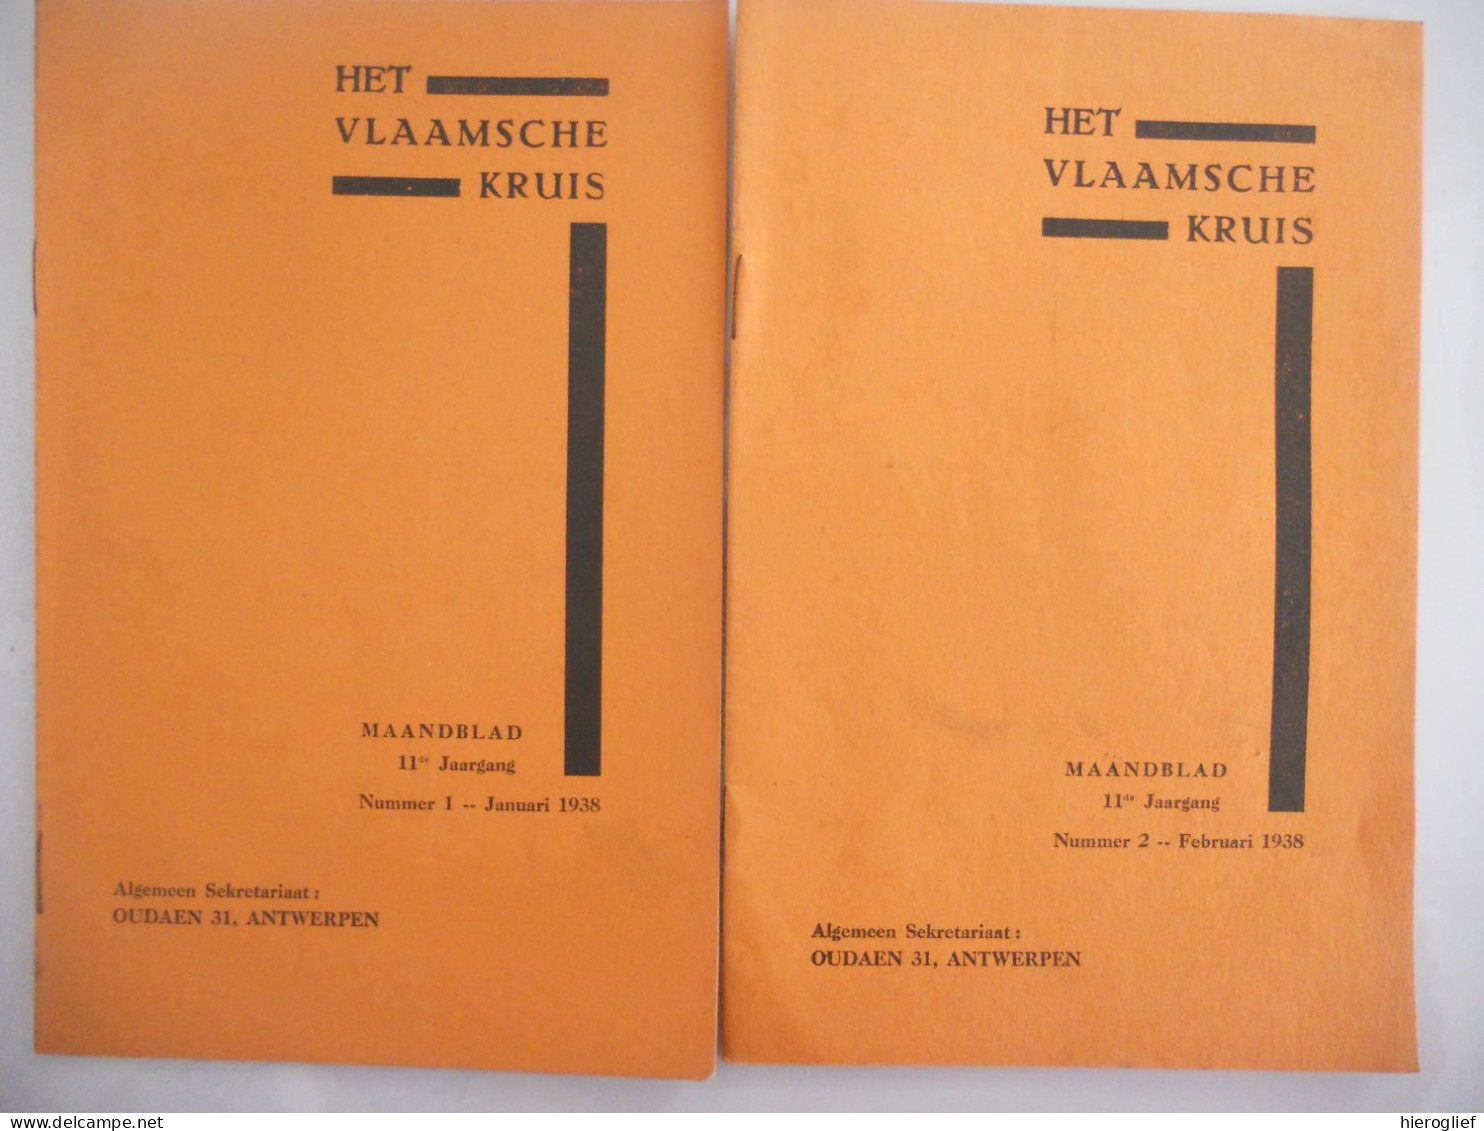 HET VLAAMSCHE KRUIS - Maandblad 1938 Nr 1 + 2 - Secretariaat Oudaen 31 Antwerpen / Vlaams Kruis EHBO Gezondheid Medisch - Praktisch